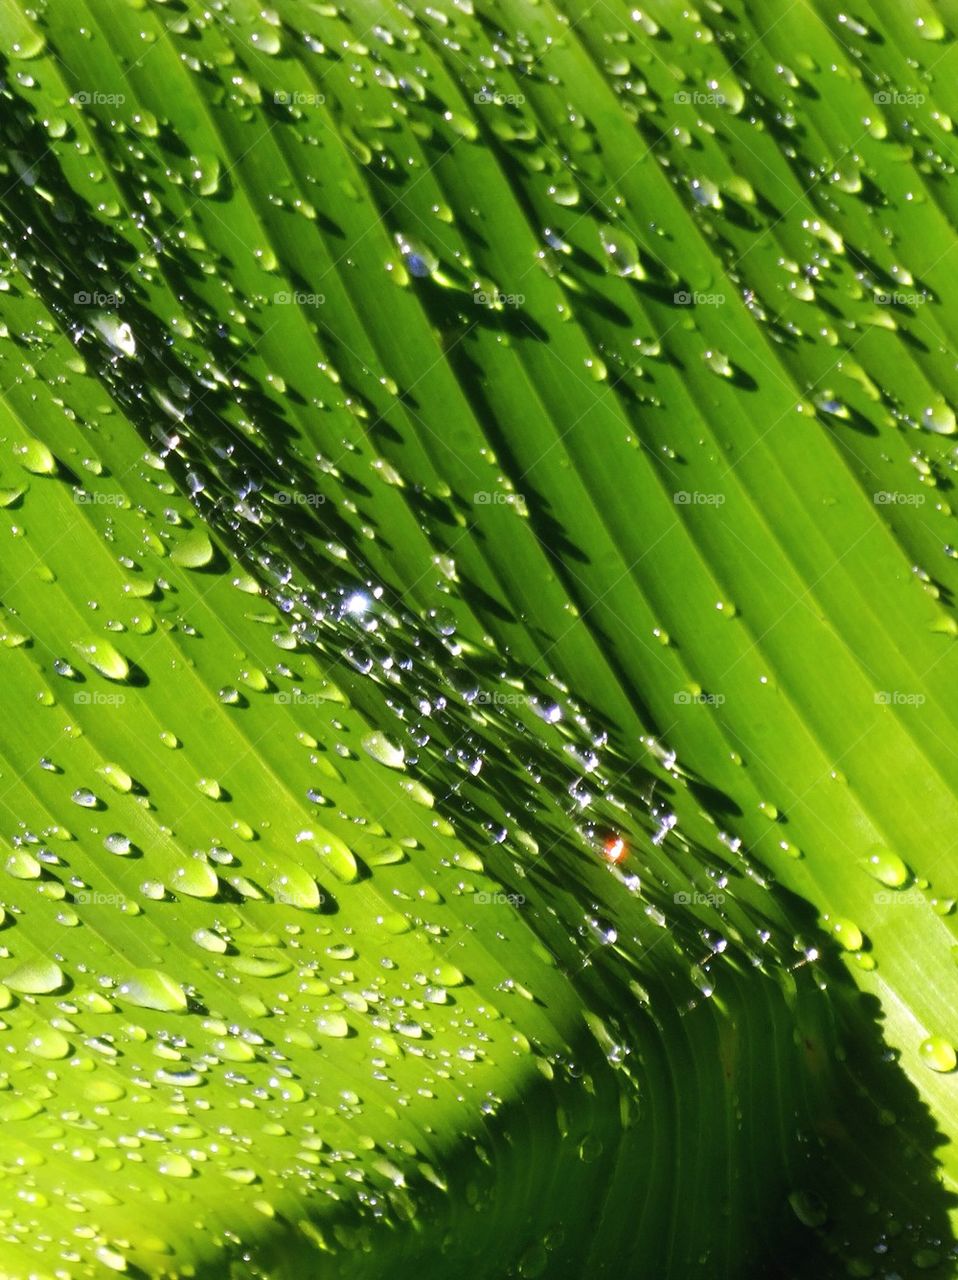 Dew on a banana leaf